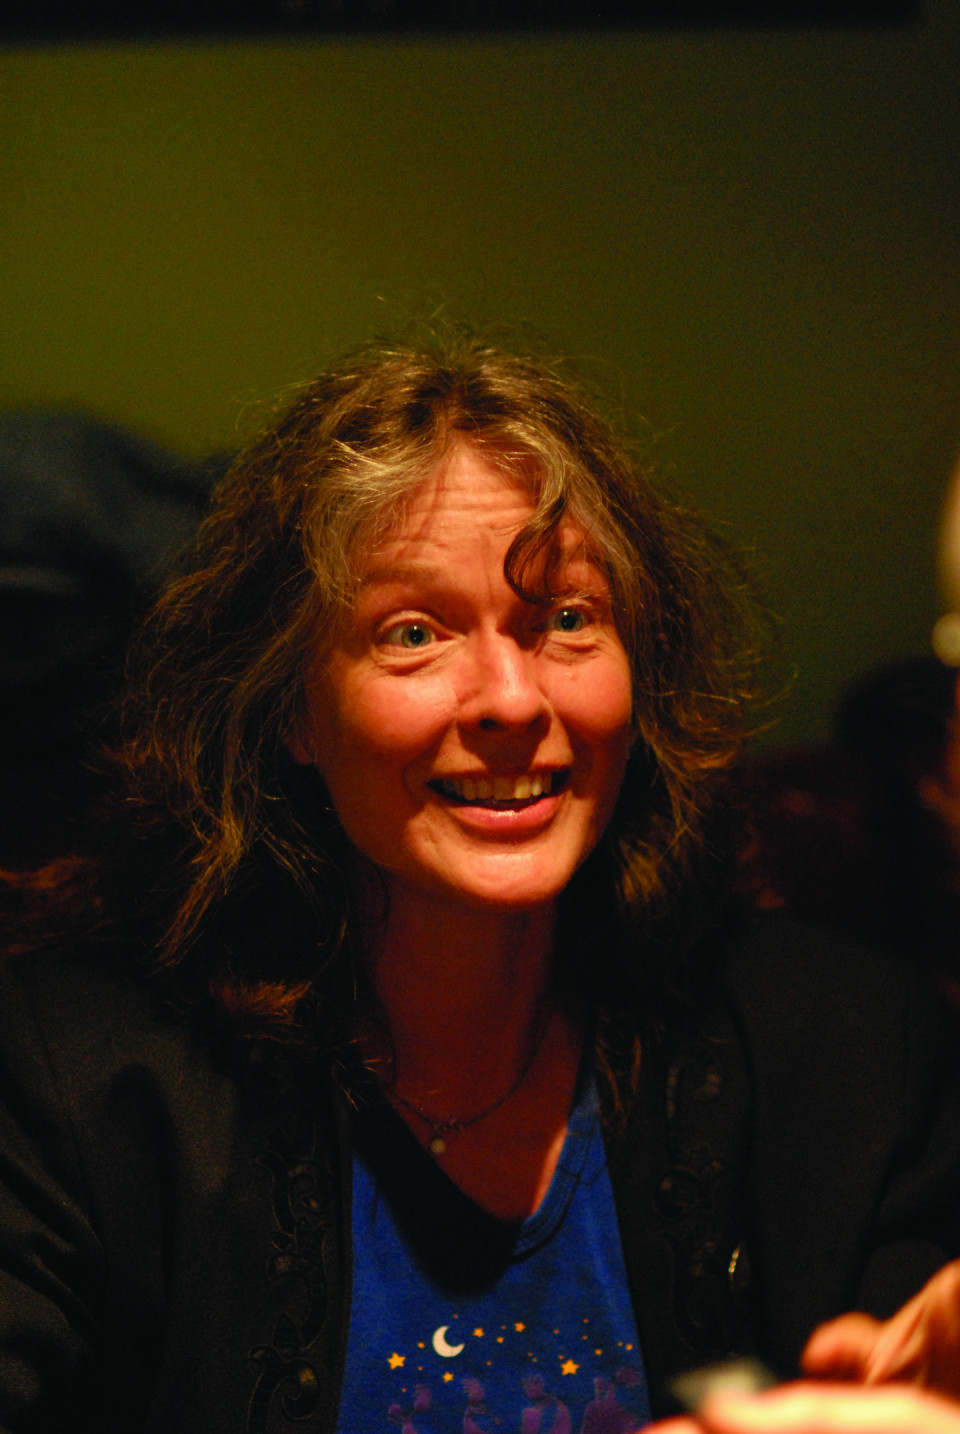 Karen Young [Photograph: Daniel Dufour, Montréal (Québec), May 30, 2008]